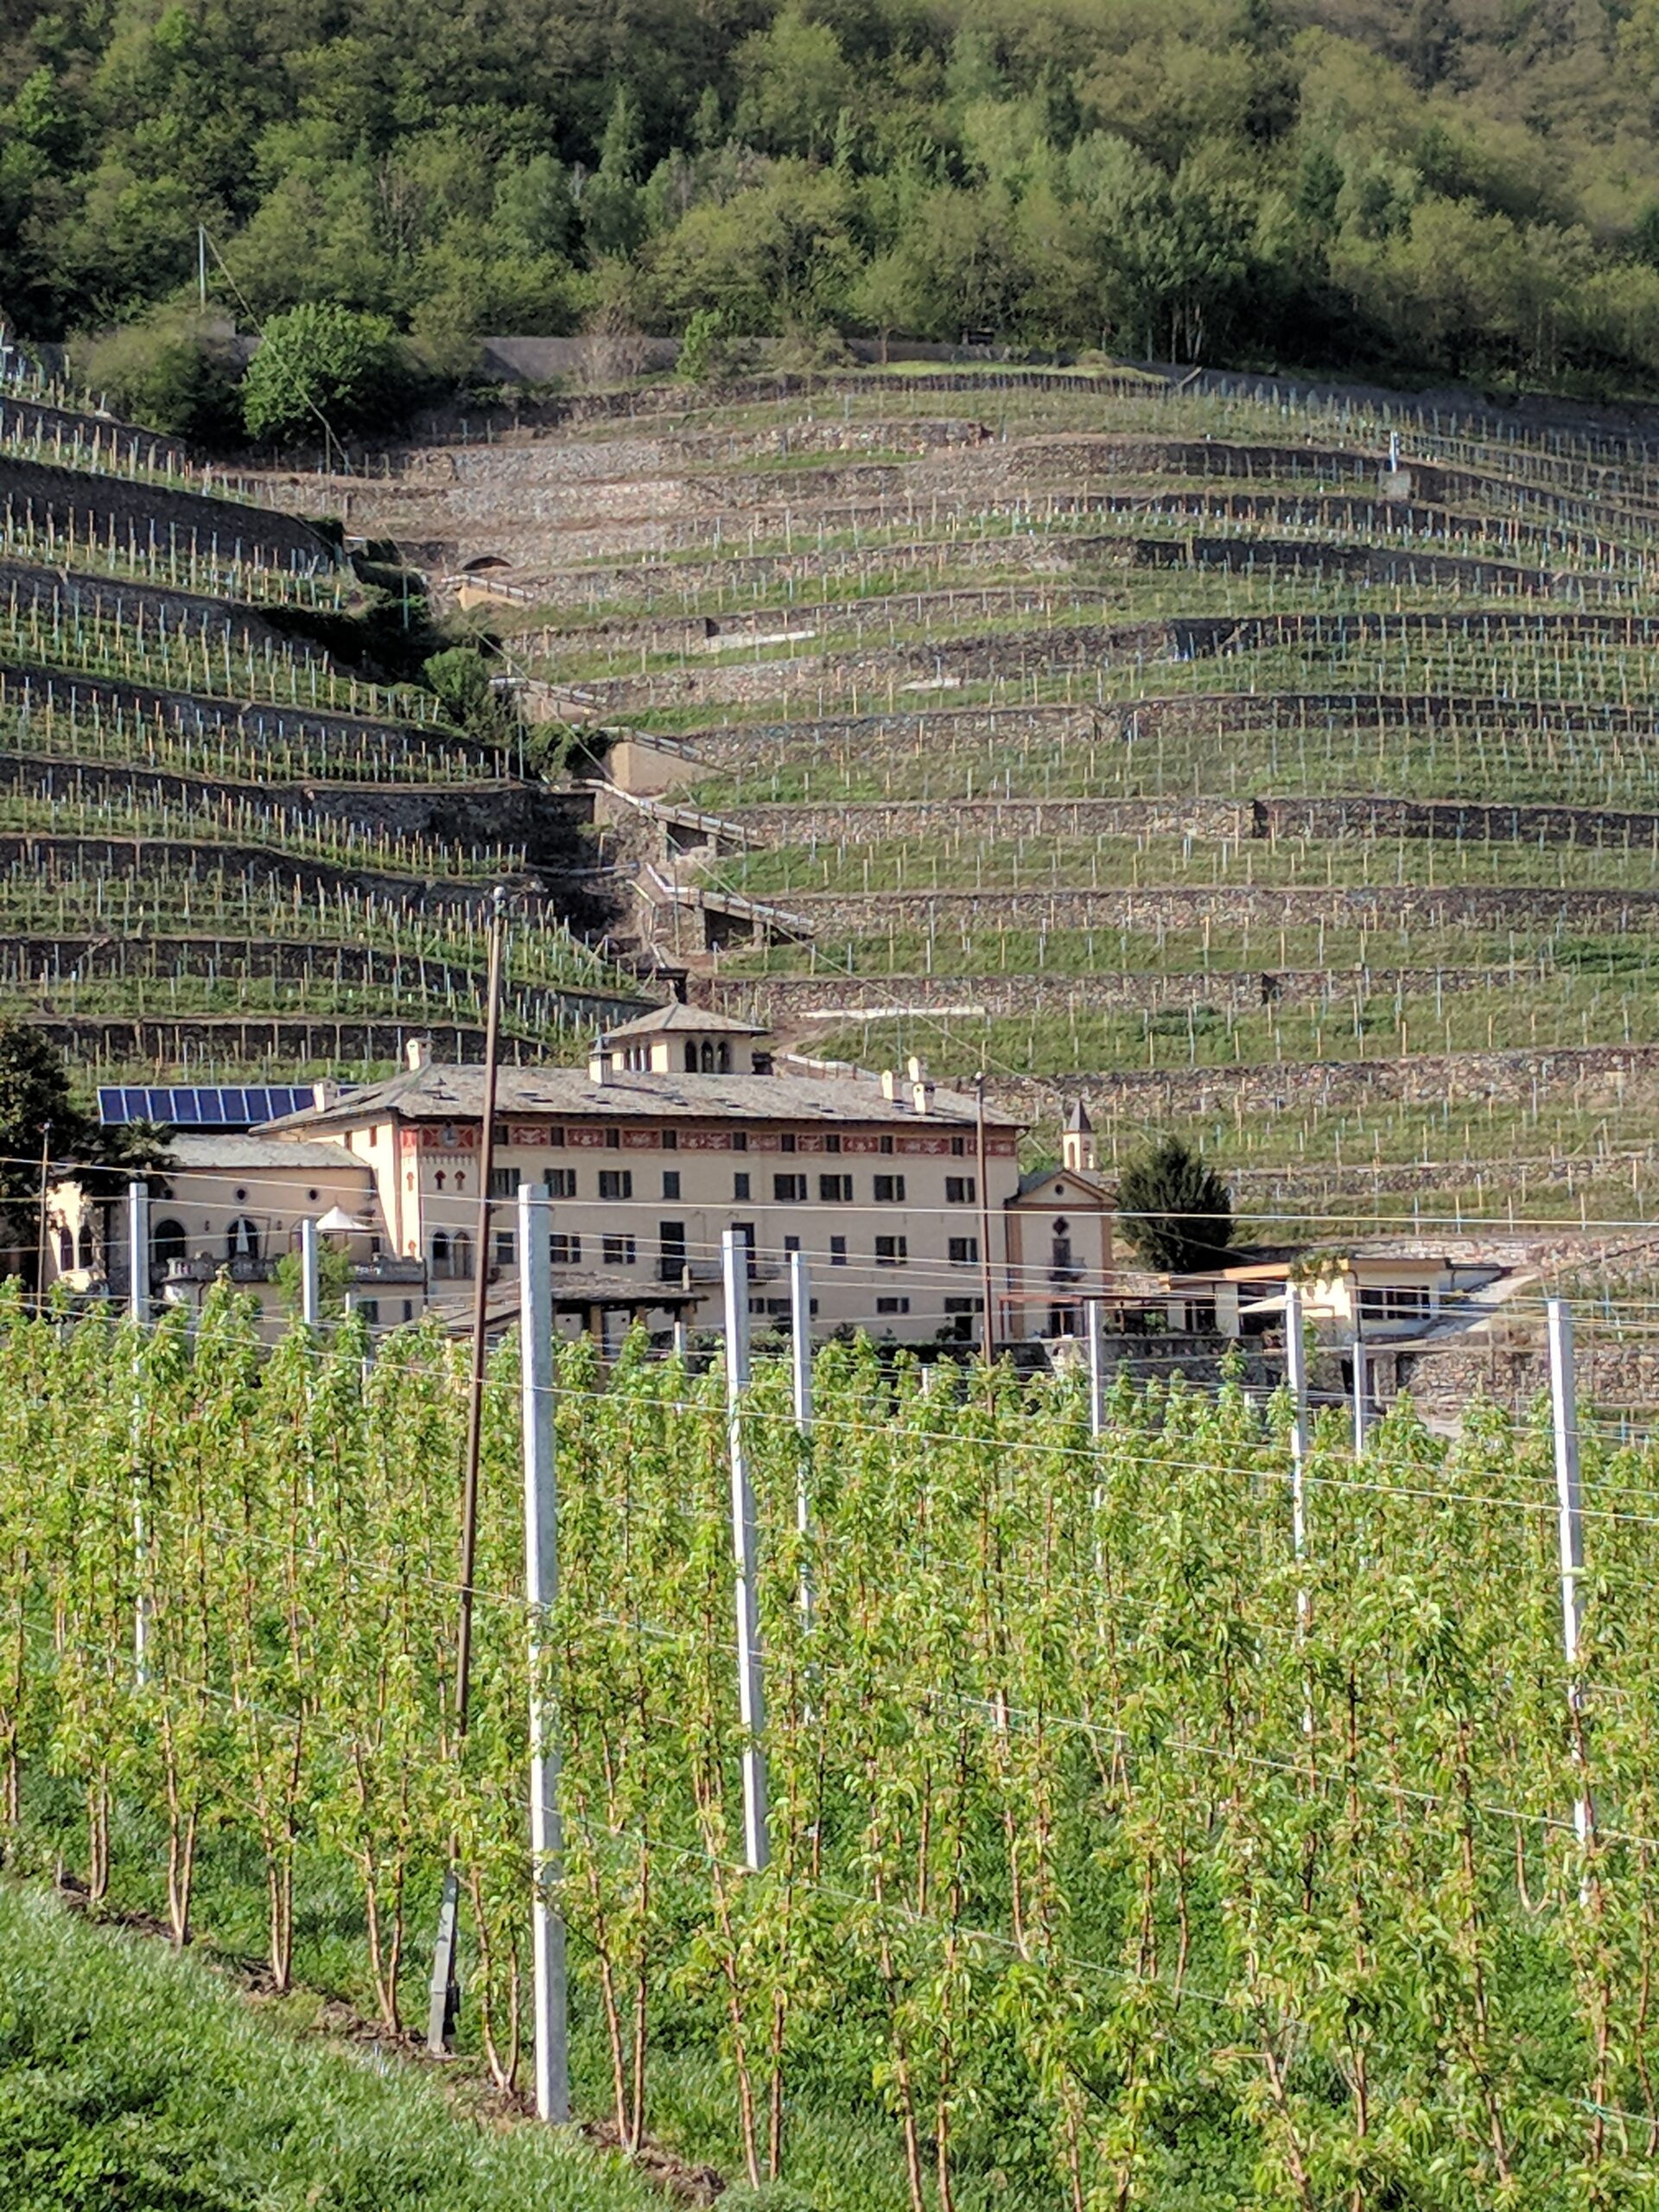 Valtellina Wine Trail teasers